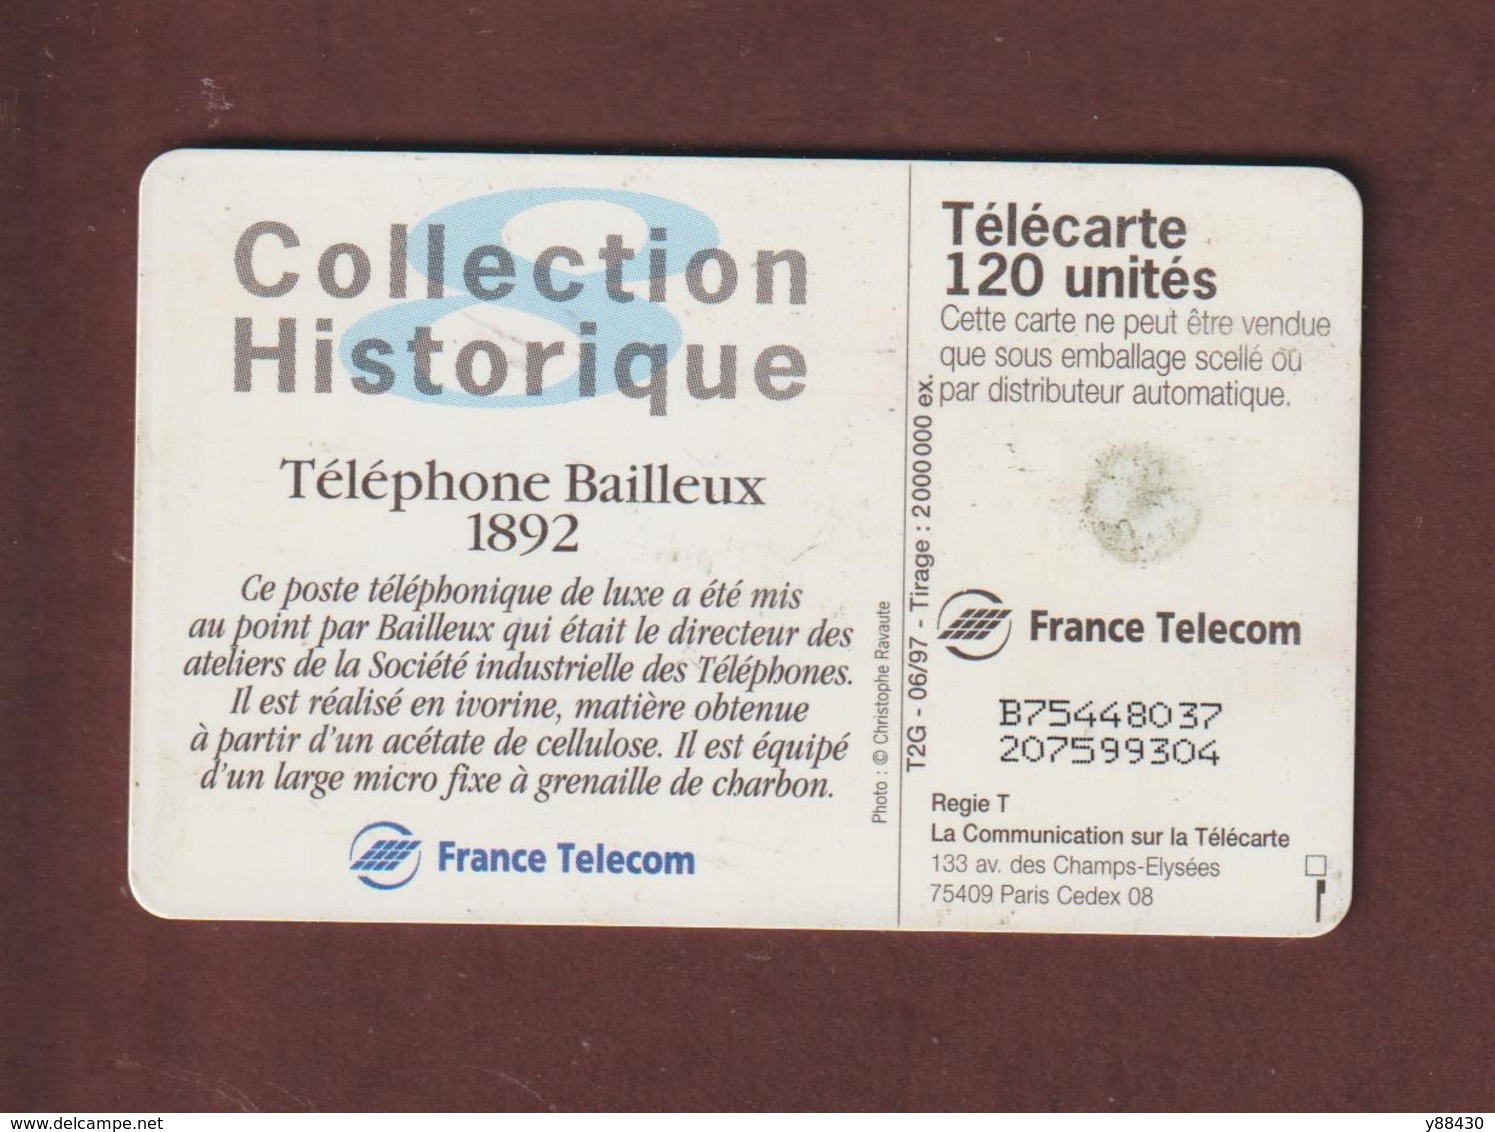 TELECARTE - Carte Téléphonique De 120 Unités - Téléphone Bailleux 1892  - 2 Scannes. - 120 Unidades